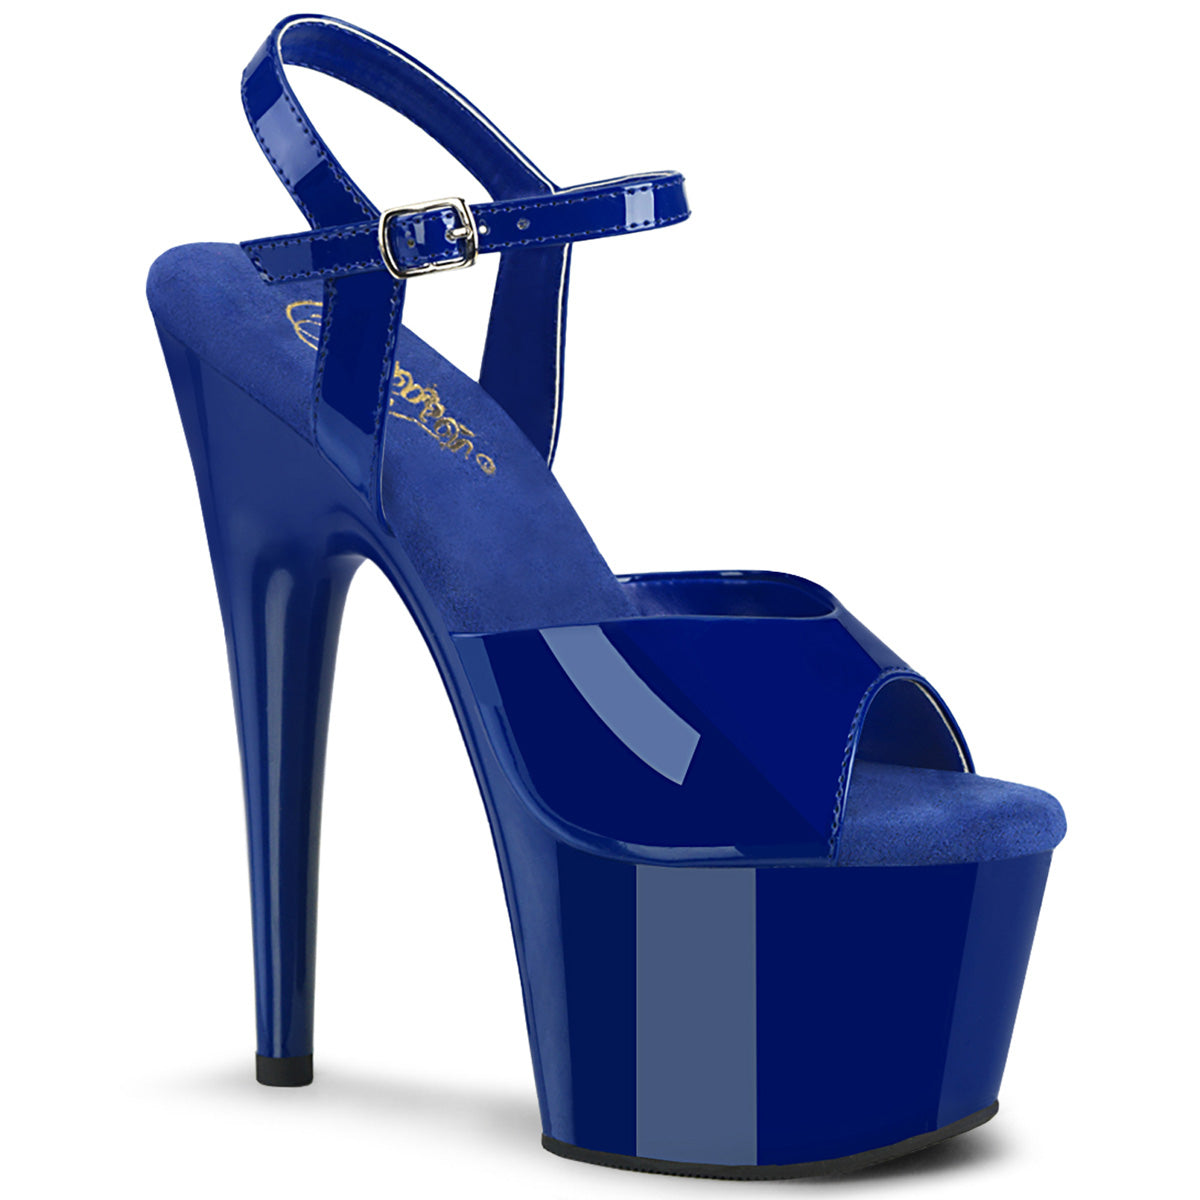 Pleaser ADORE-709 Royal Blue Pat 7 Inch (178mm) Heel, 2 3/4 Inch (70mm) Platform Ankle Strap Sandal